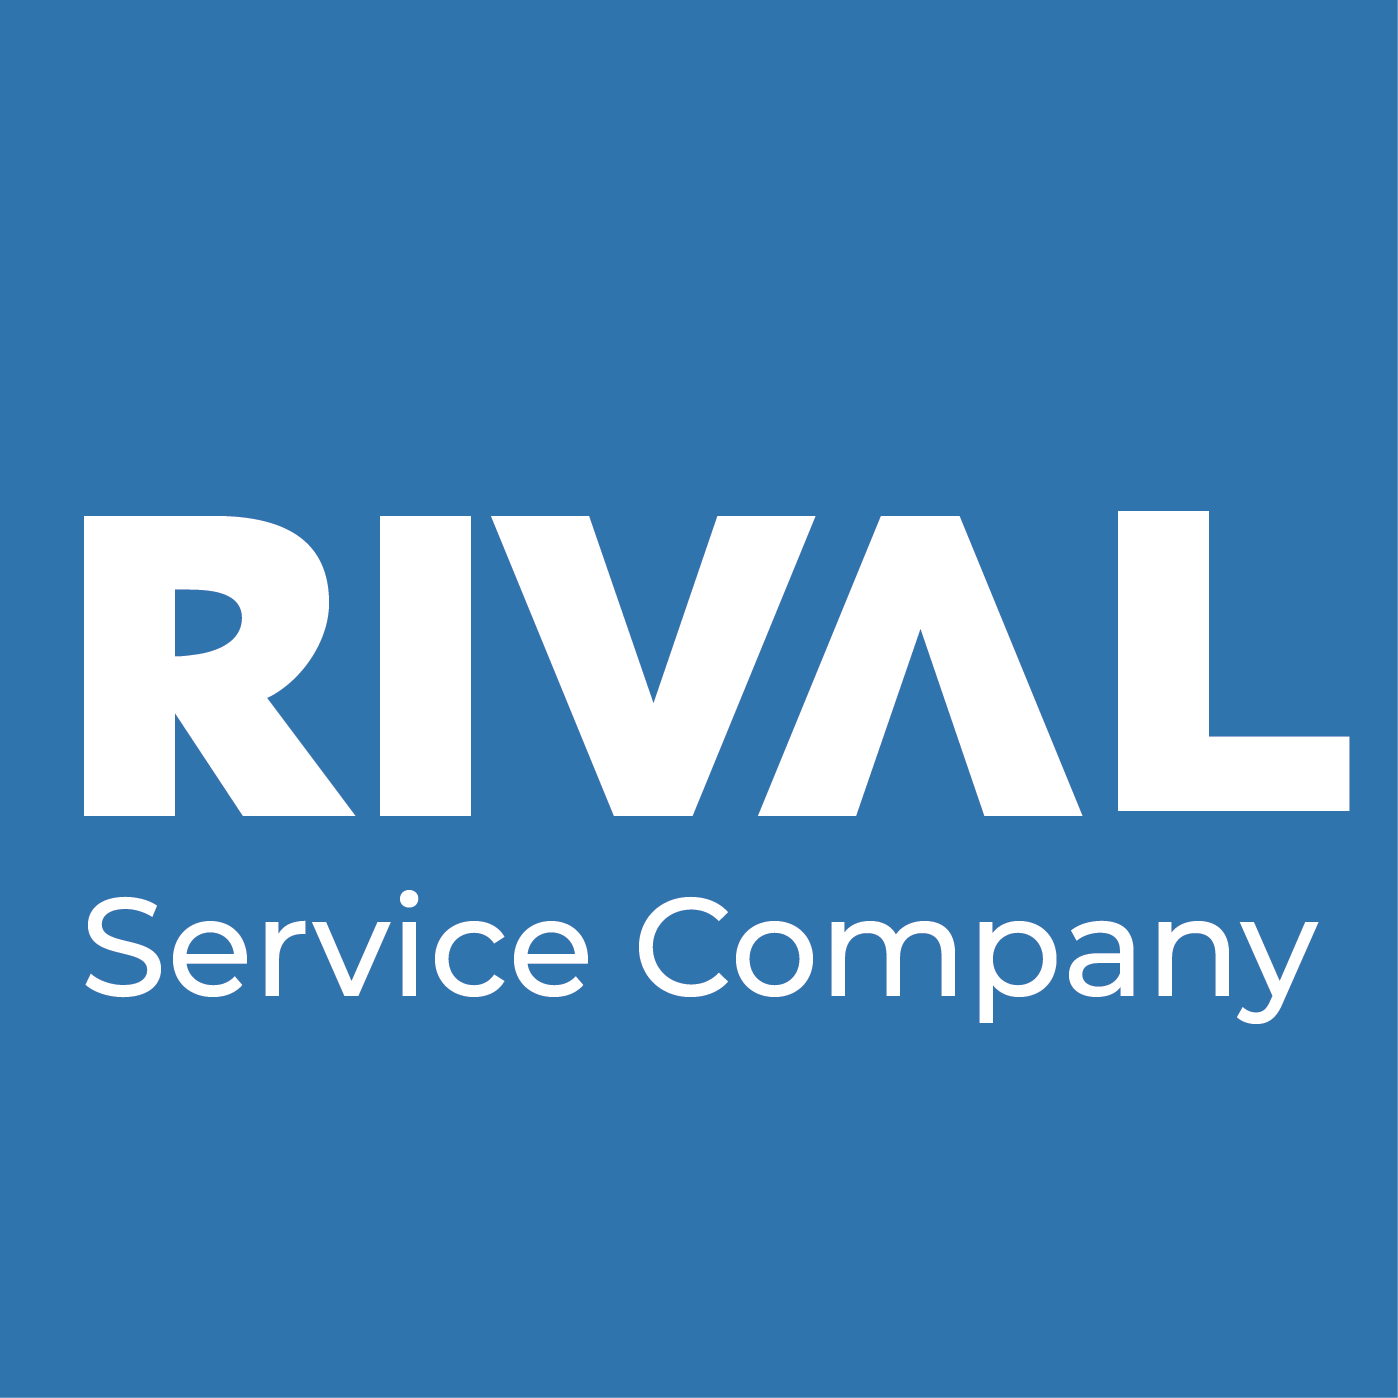 RIVAL Service Company